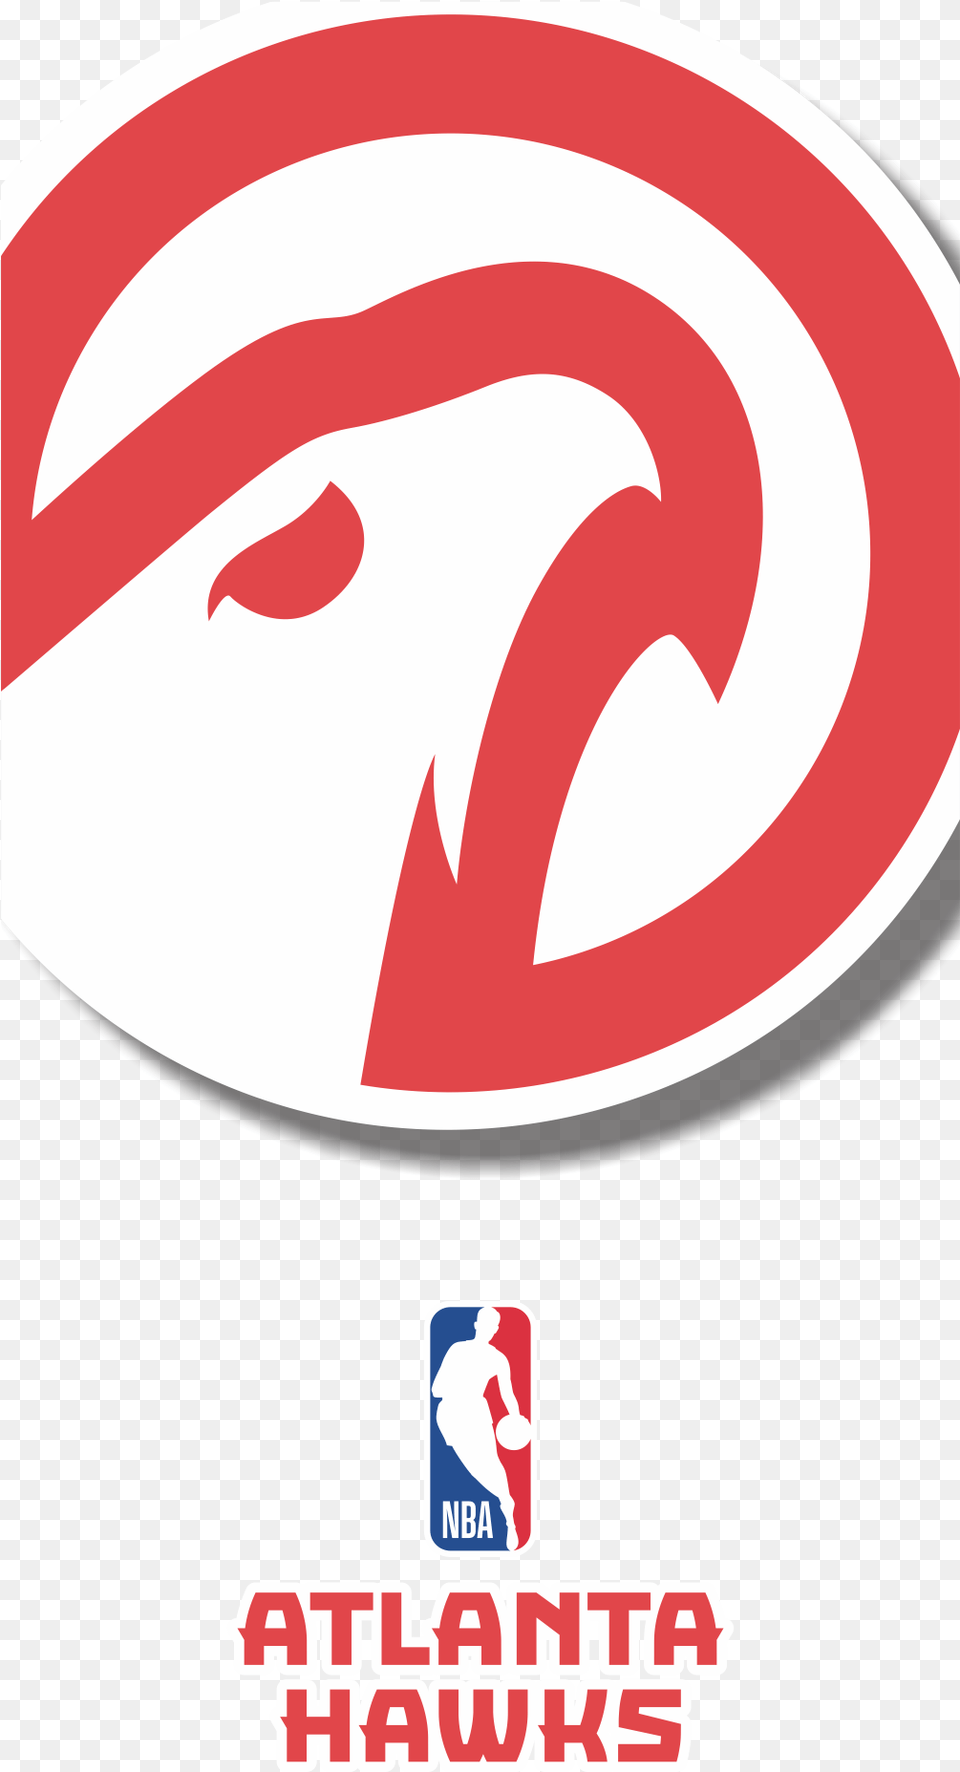 Atlanta Hawks Transparente, Logo, Sticker Free Transparent Png